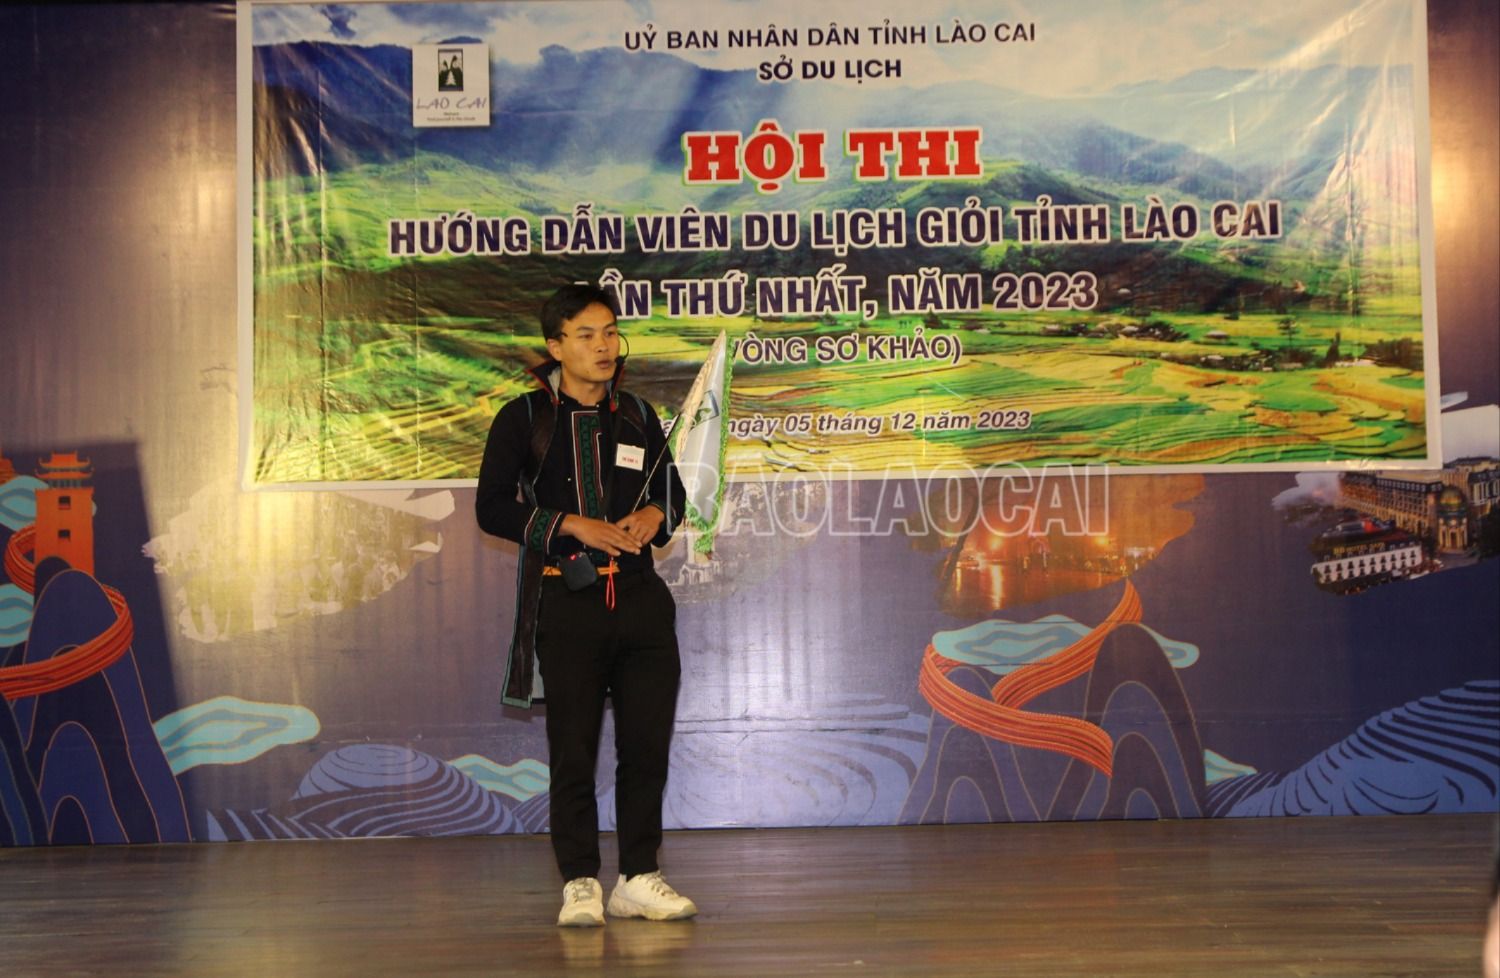 15 thí sinh hoàn thành phần sơ khảo Hội thi Hướng dẫn viên du lịch giỏi tỉnh Lào Cai - Ảnh 3.